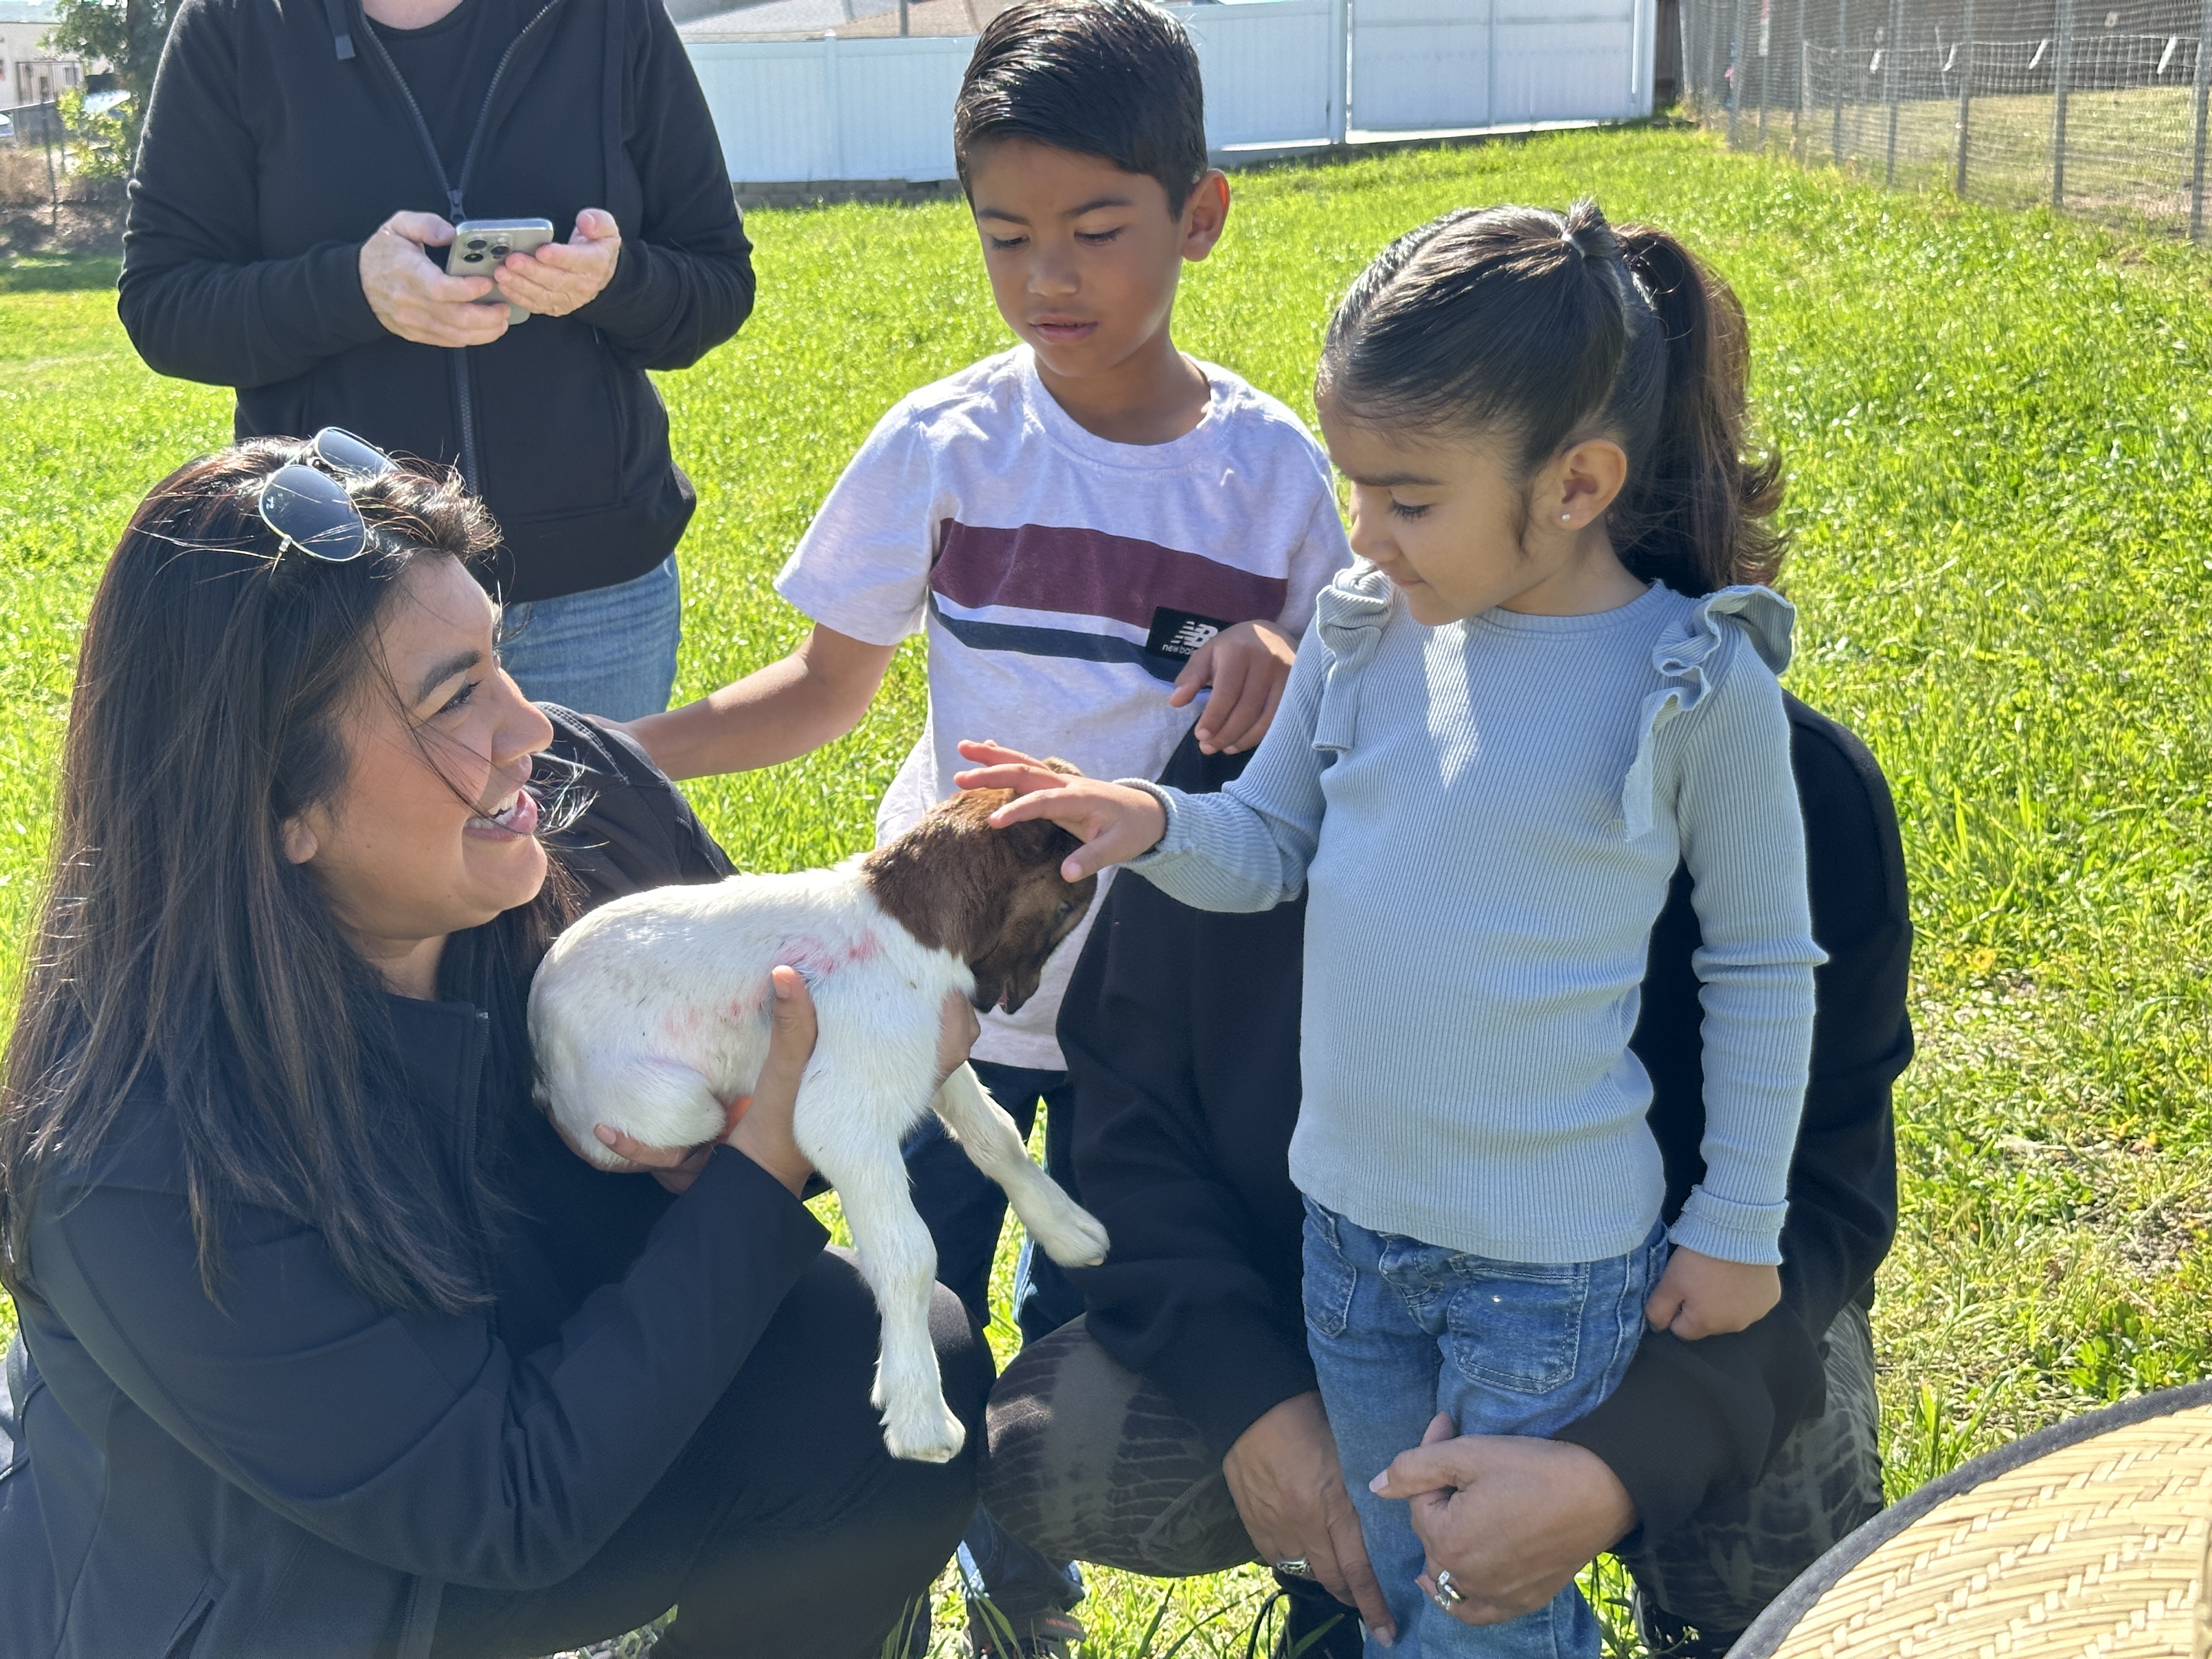 Goat grazing event in Chula Vista